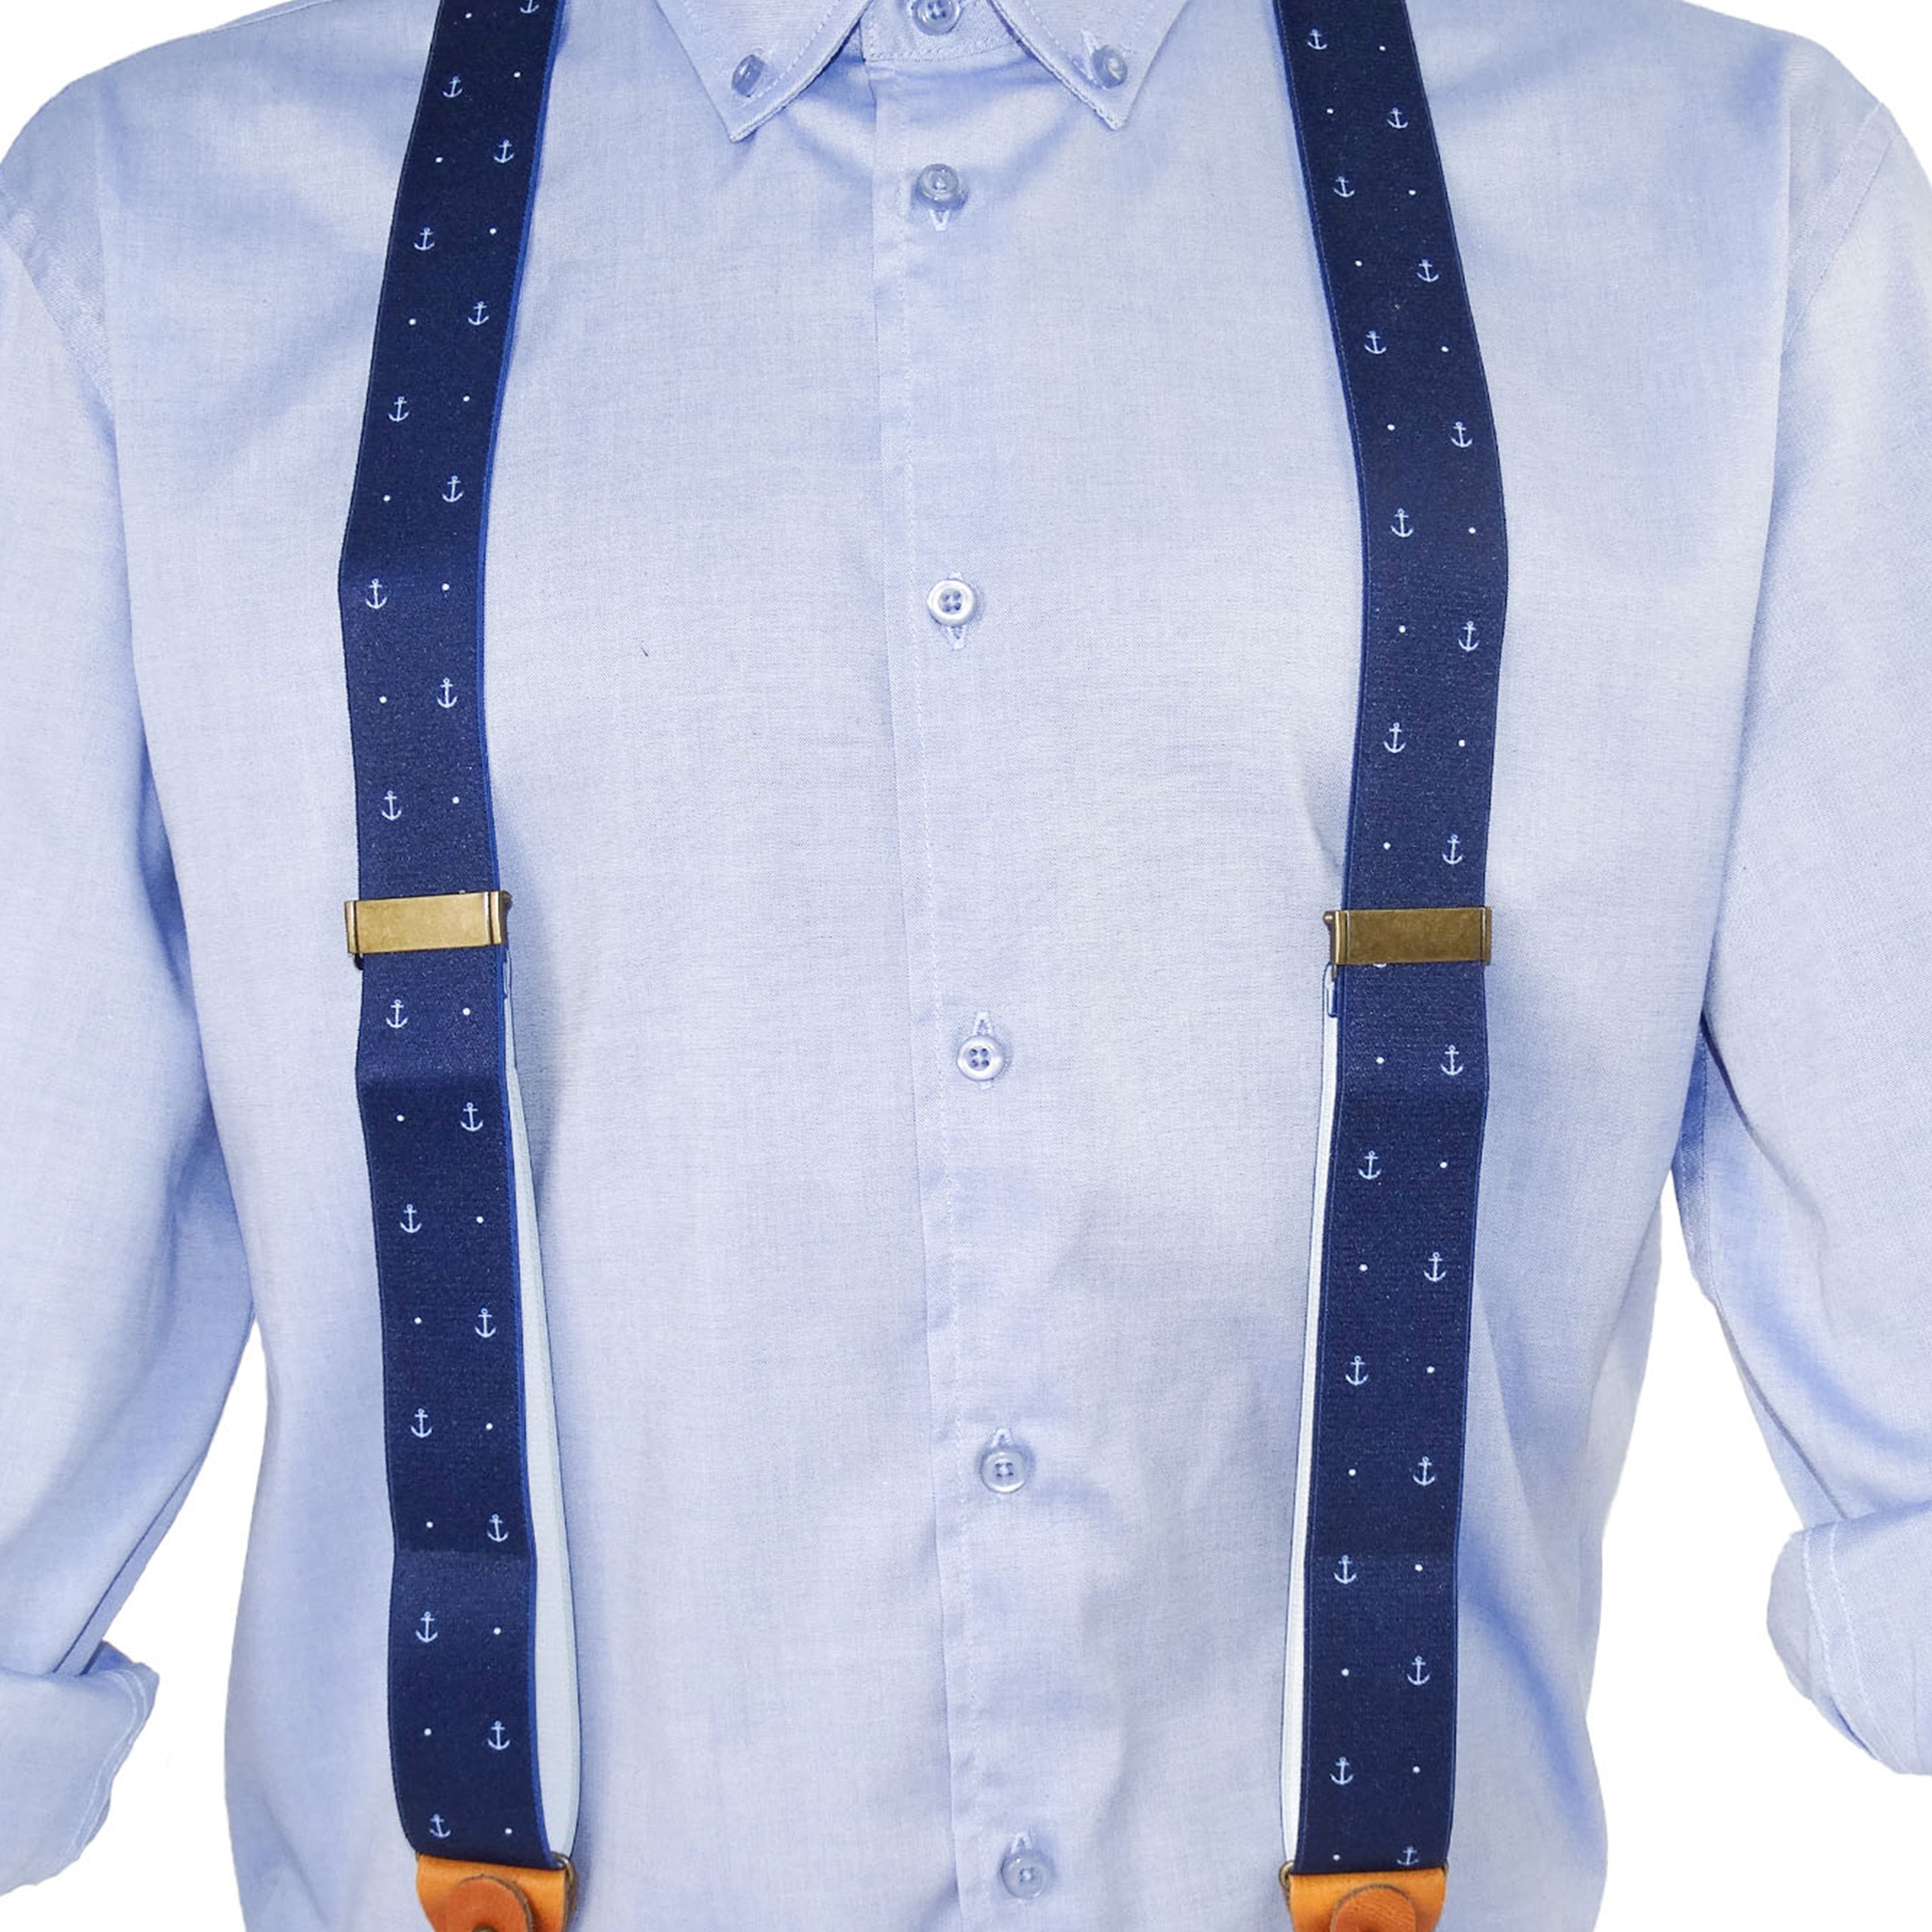 Luxury suspenders in navy anchor-dot design